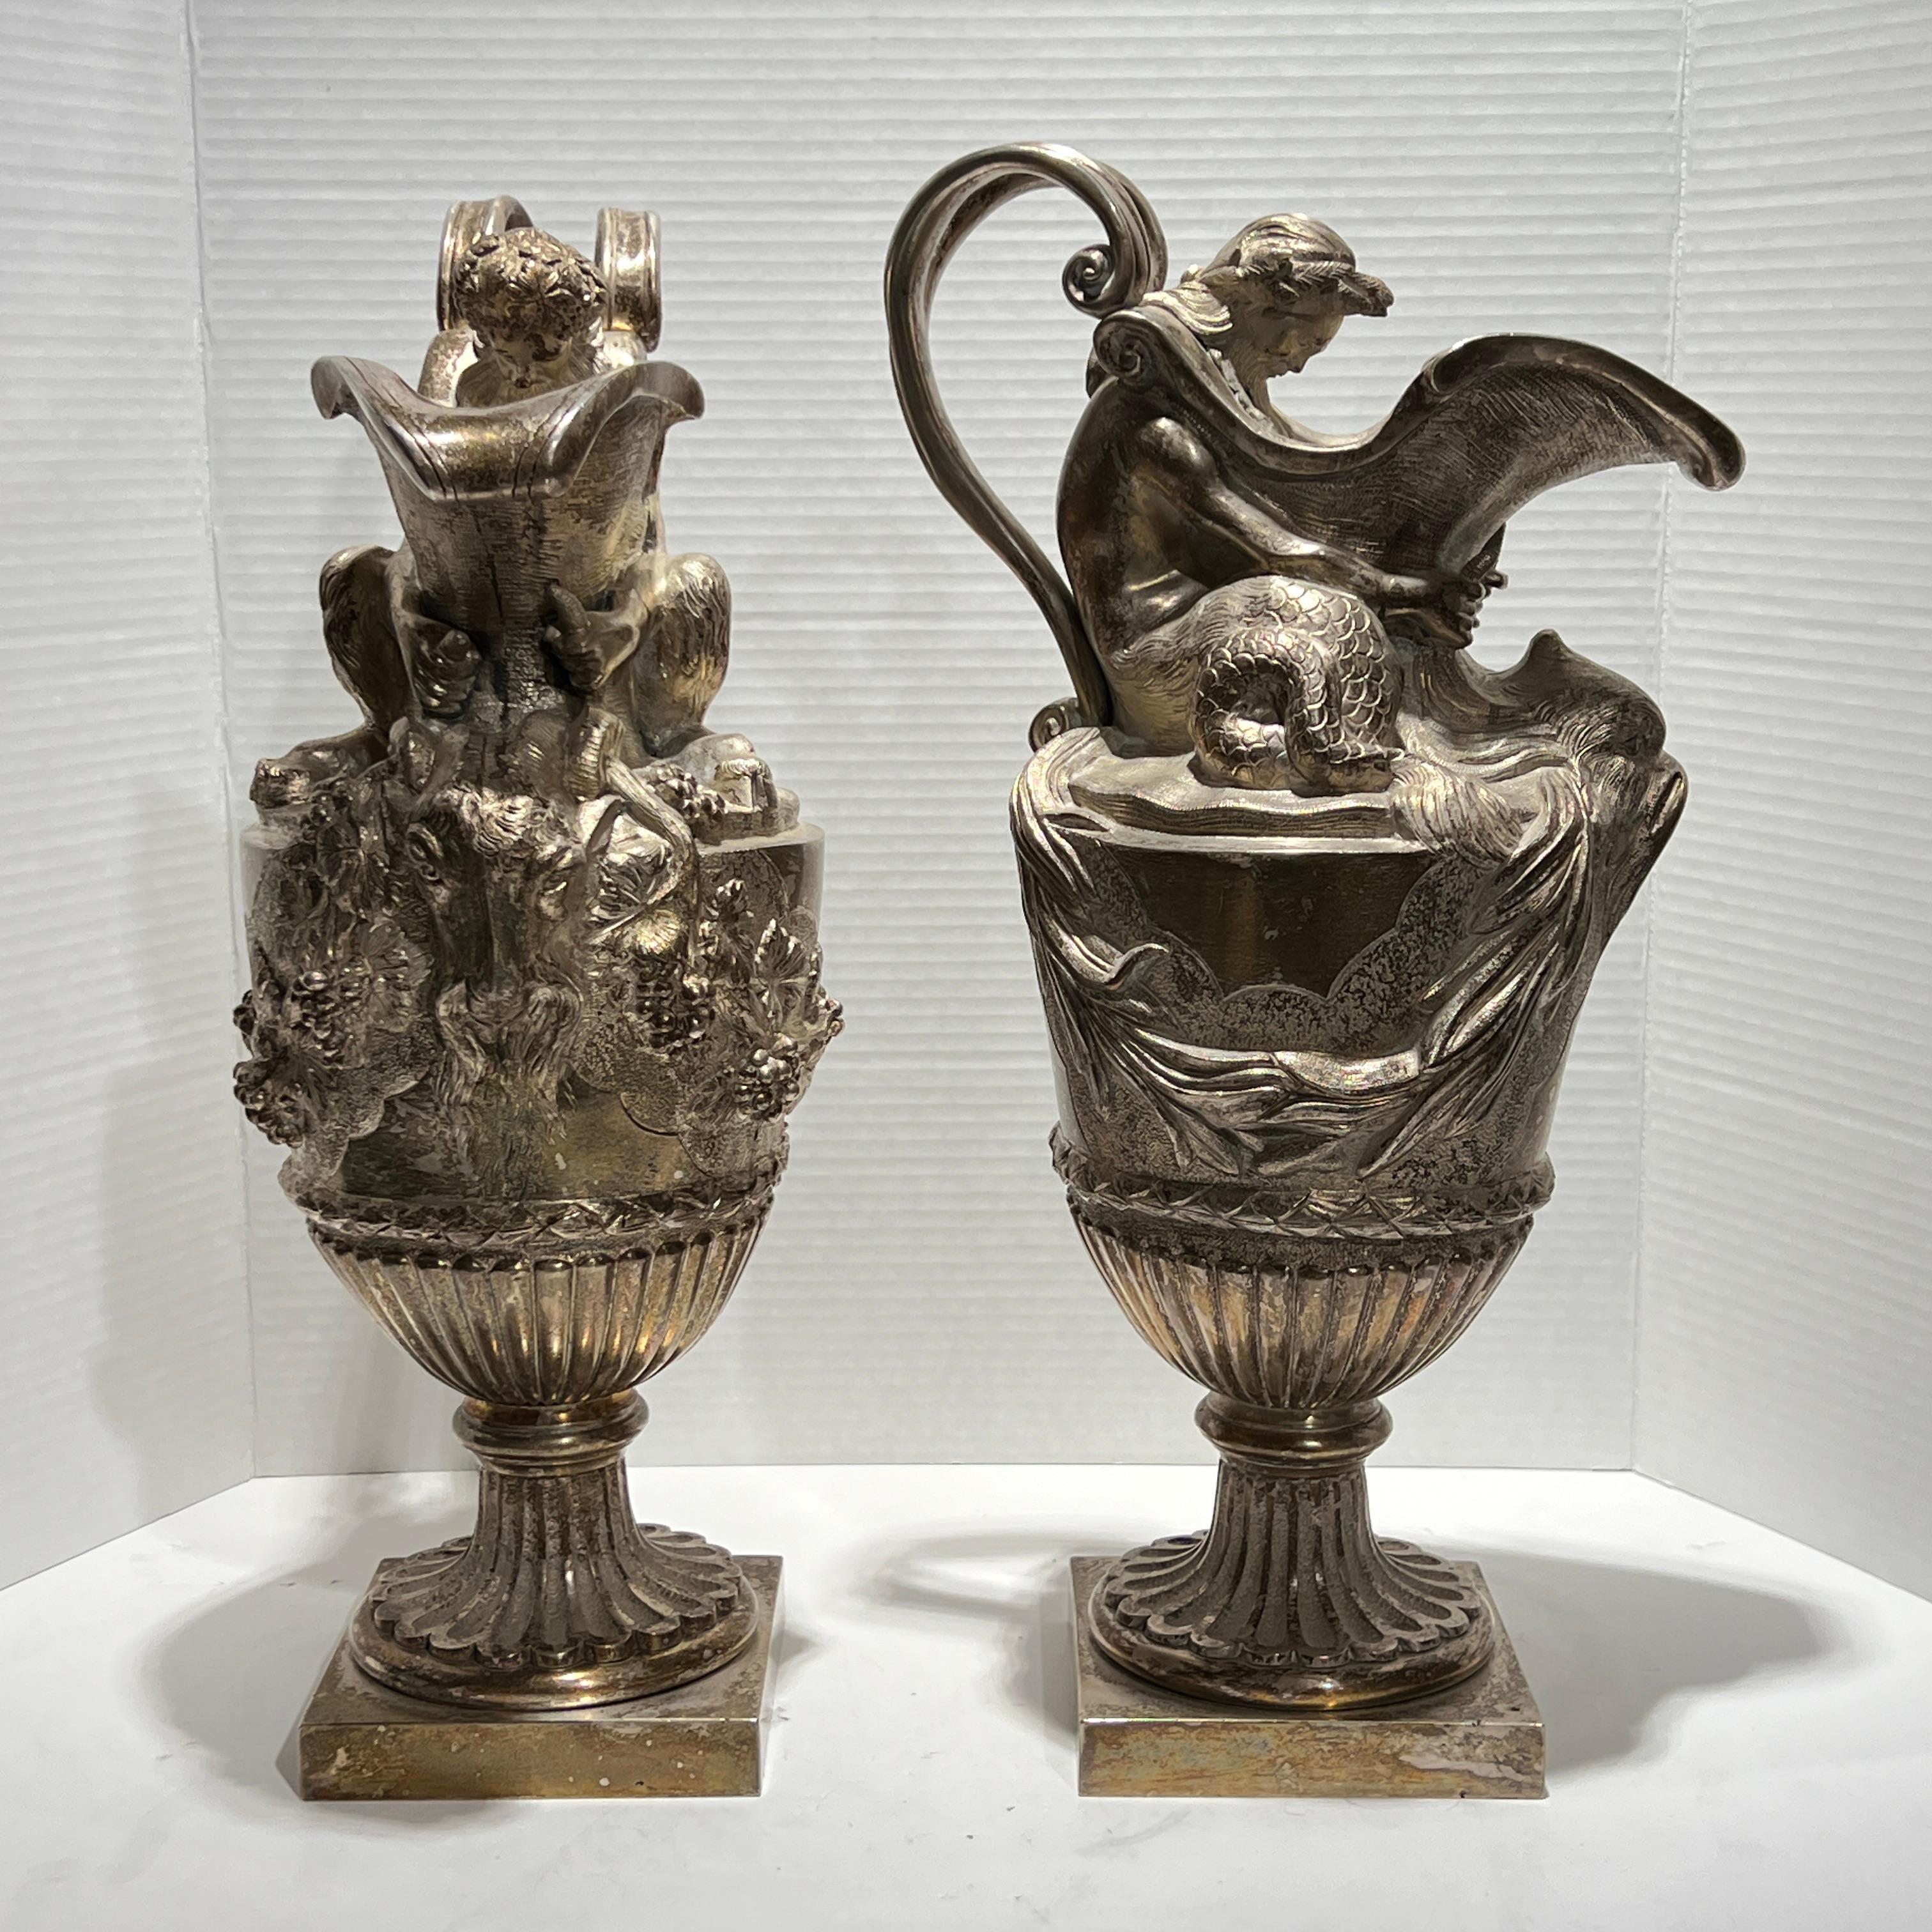 Paar antike (19. Jh.) französische versilberte Bronzewerke im Stil Ludwigs XVI. nach den Originalentwürfen von Sigisbert-Francois Michel (1728-1811). Eine mit der Figur eines Triton mit Delphinmaske und Binsen, die andere mit einer  Satyr mit